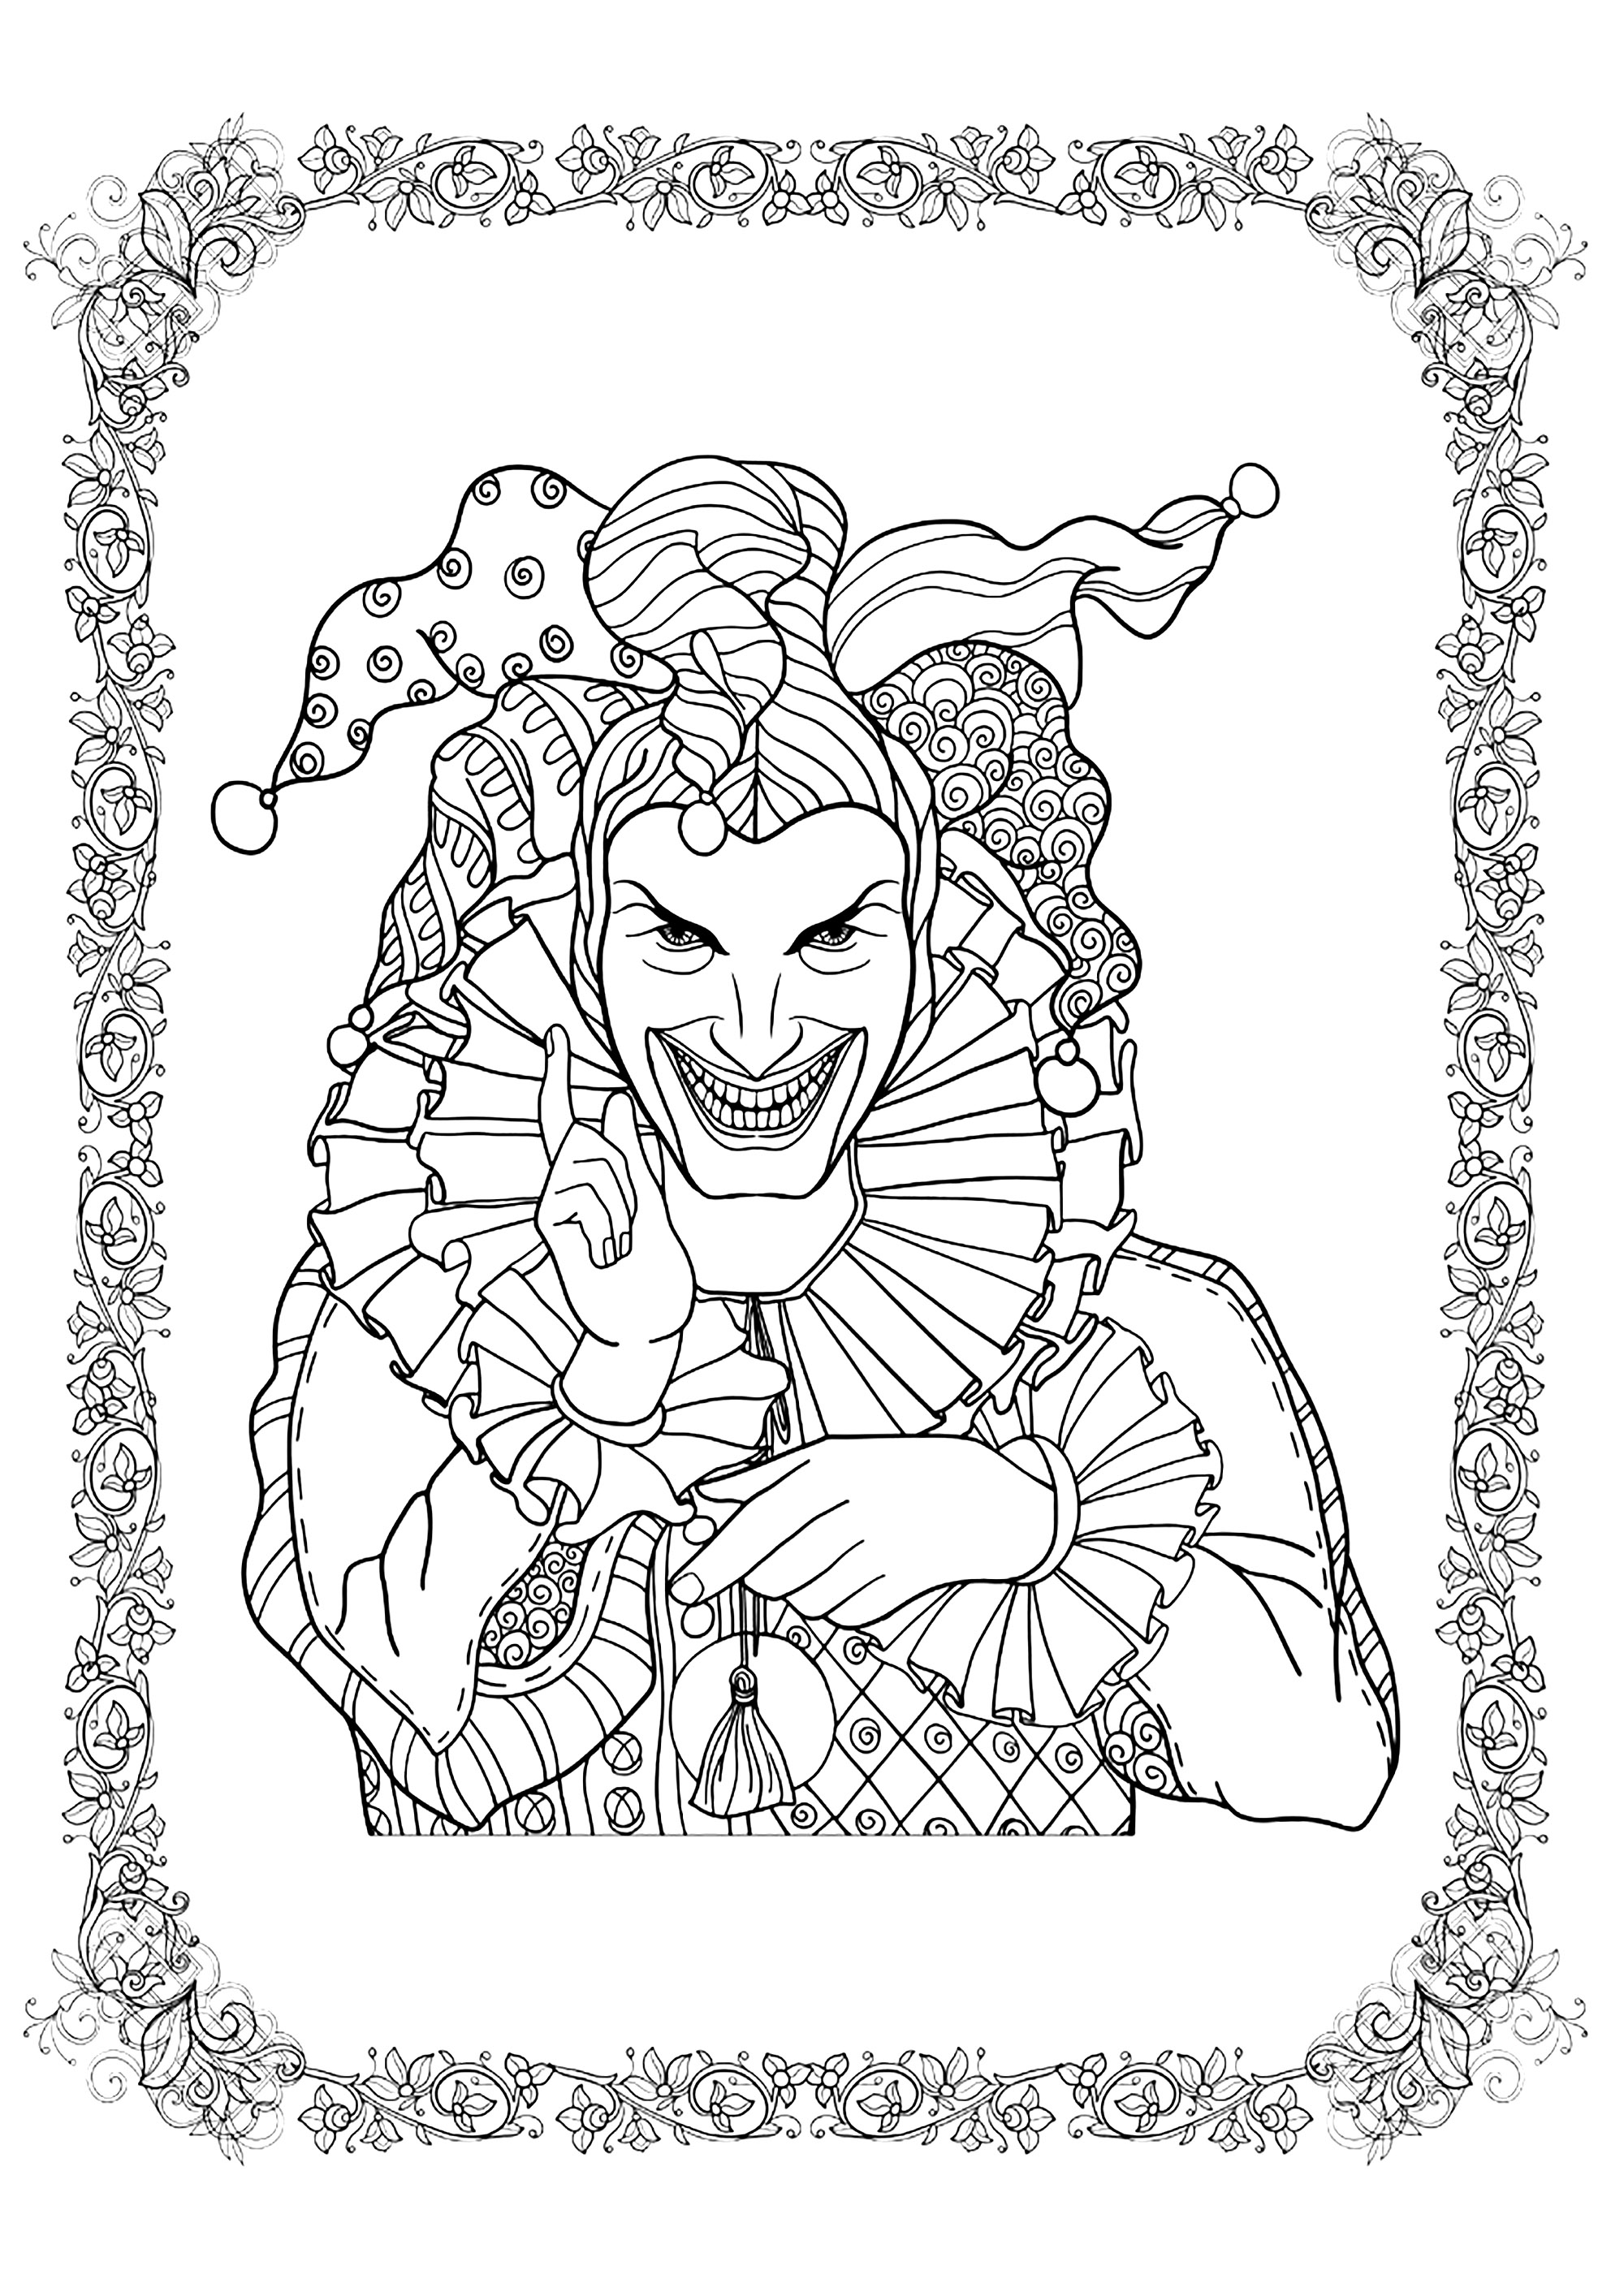 Joker si dà da fare per Halloween. Colorate anche la cornice a motivi intricati, Fonte : 123rf   Artista : Helenlane